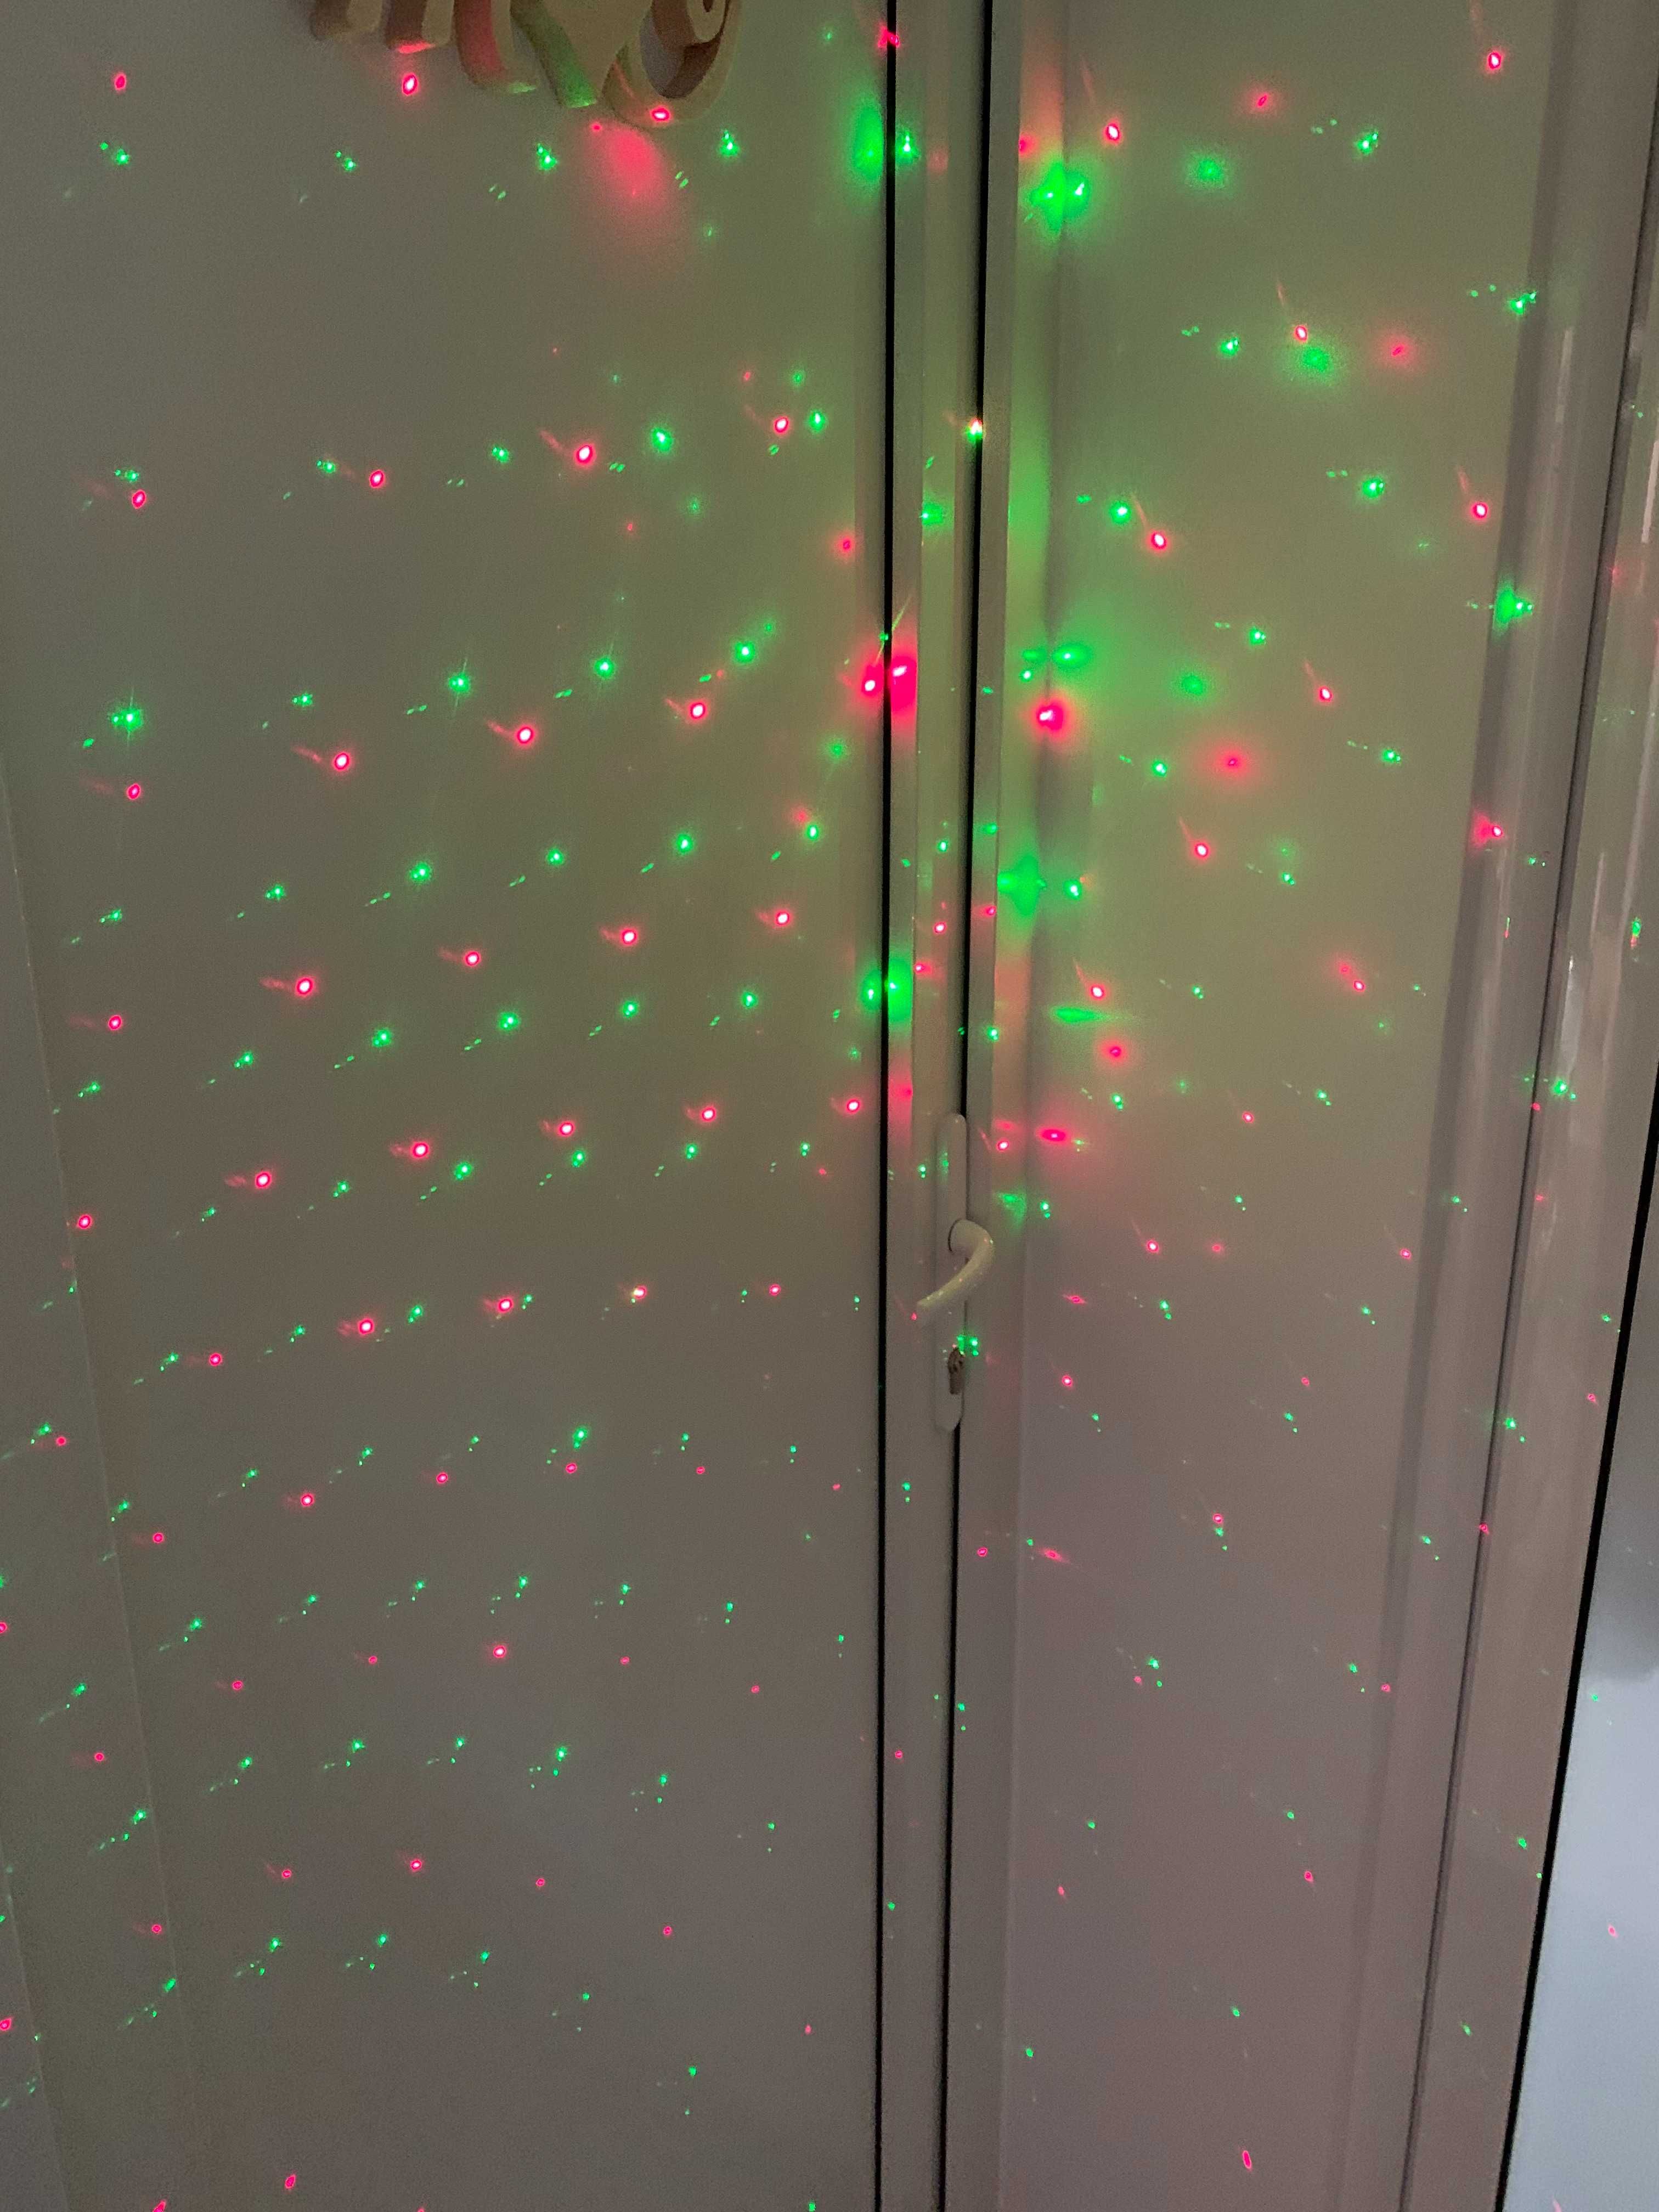 Proiector laser lumina decorativa pentru casa